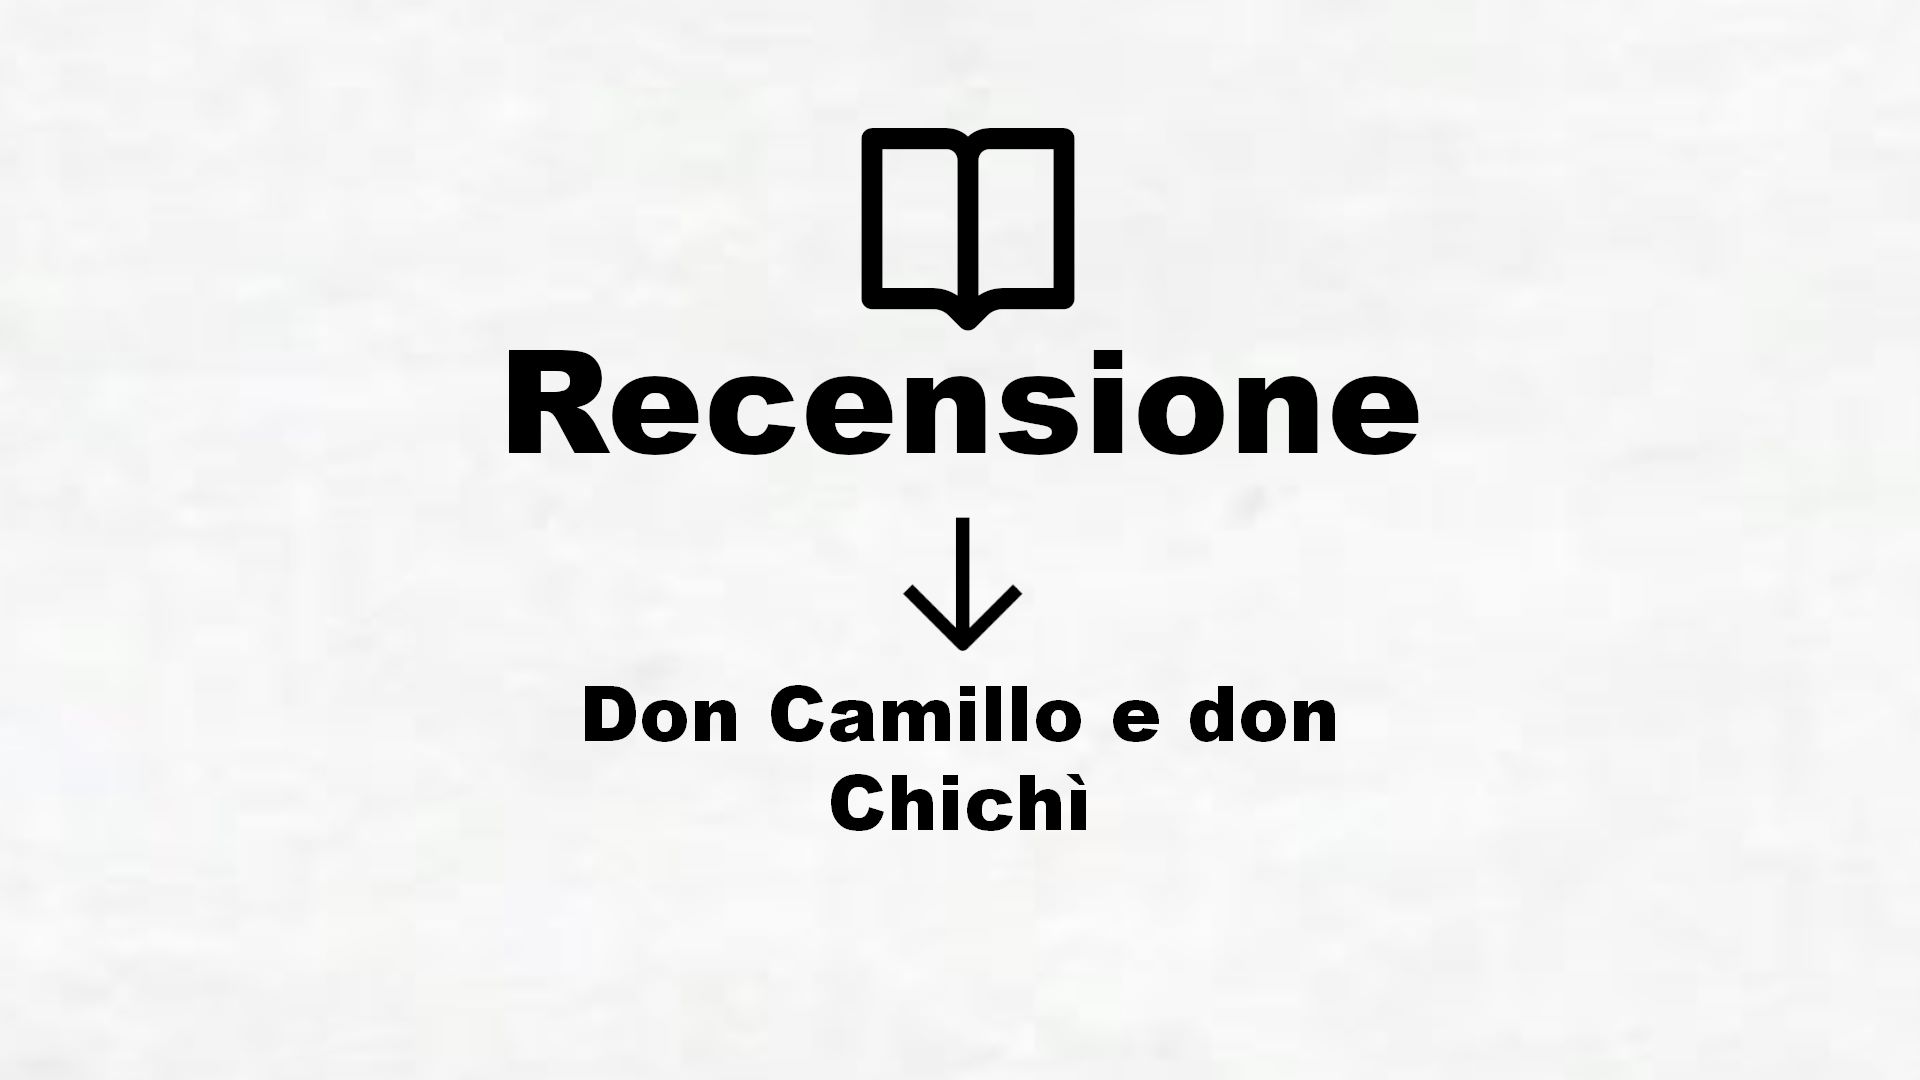 Don Camillo e don Chichì – Recensione Libro